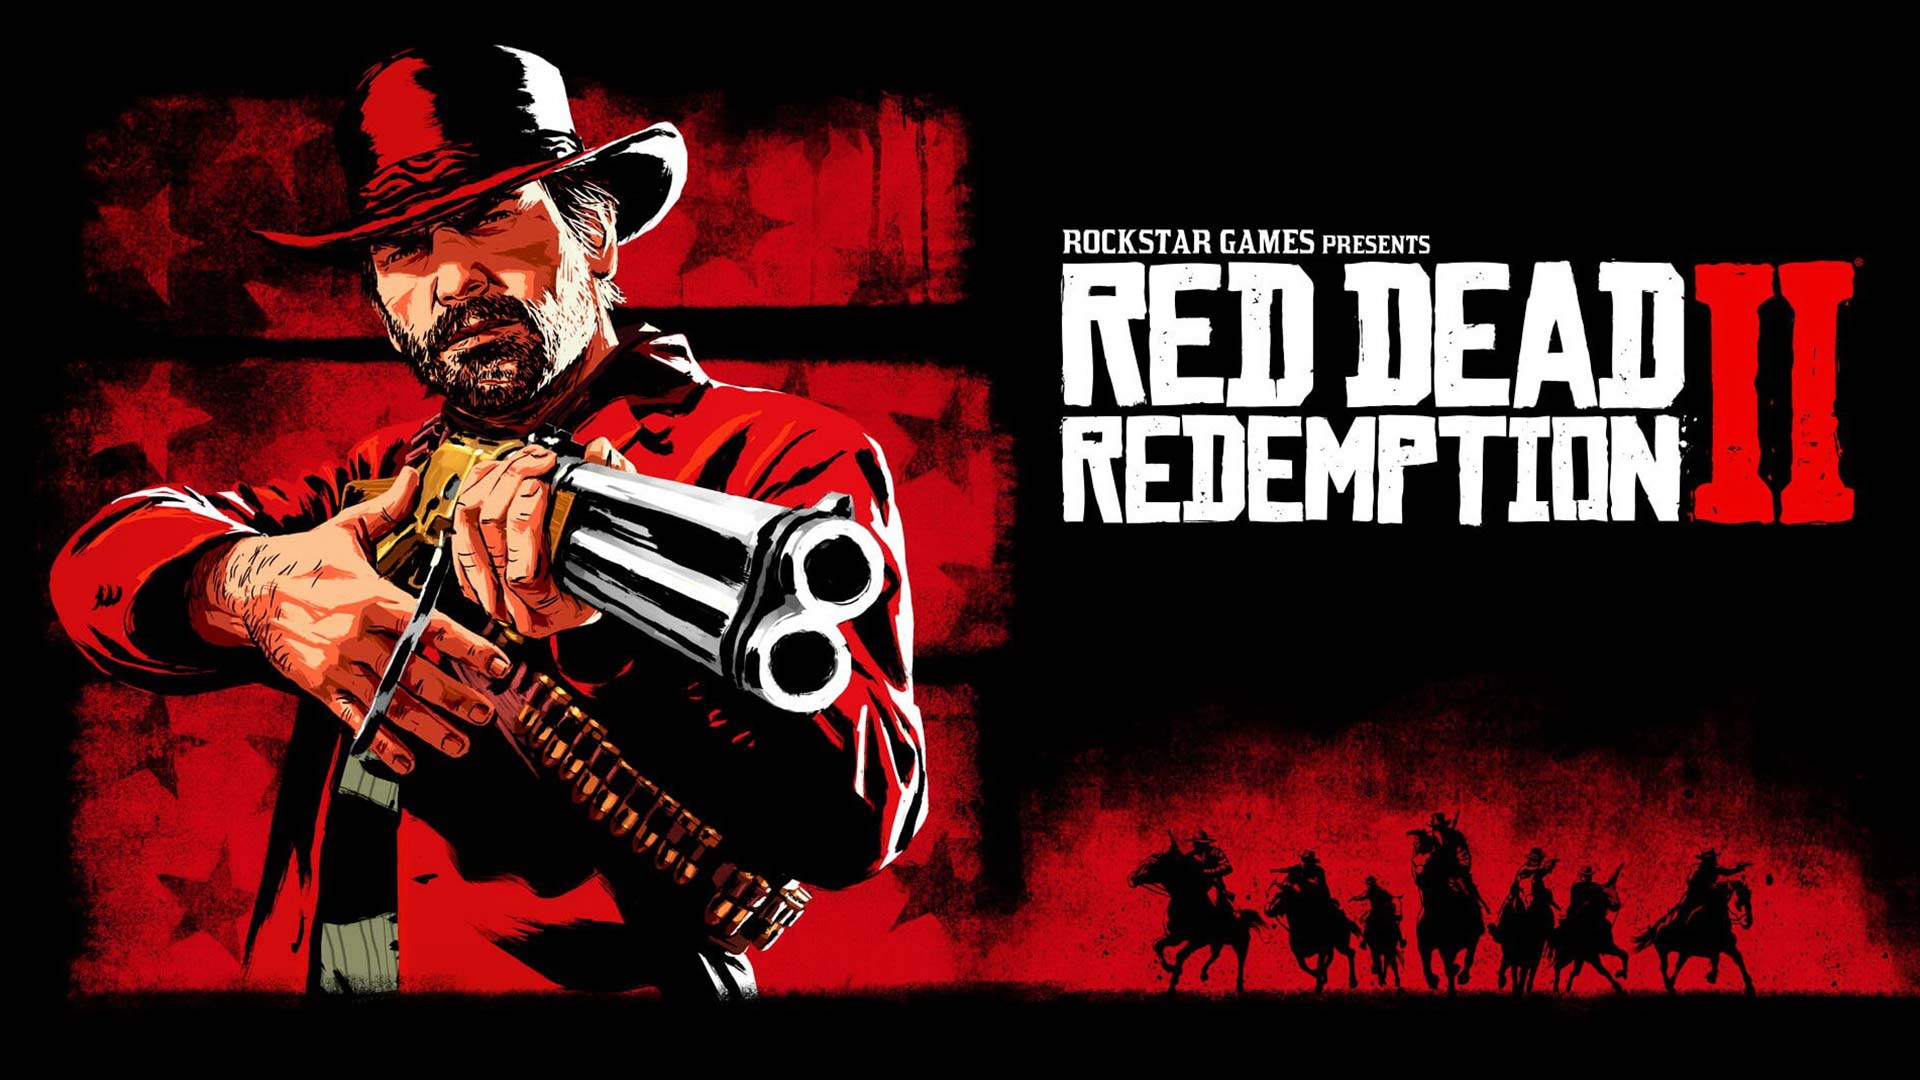 هزینه هنگفت گوگل برای عرضه نسخه استیدیا بازی Red Dead Redemption 2